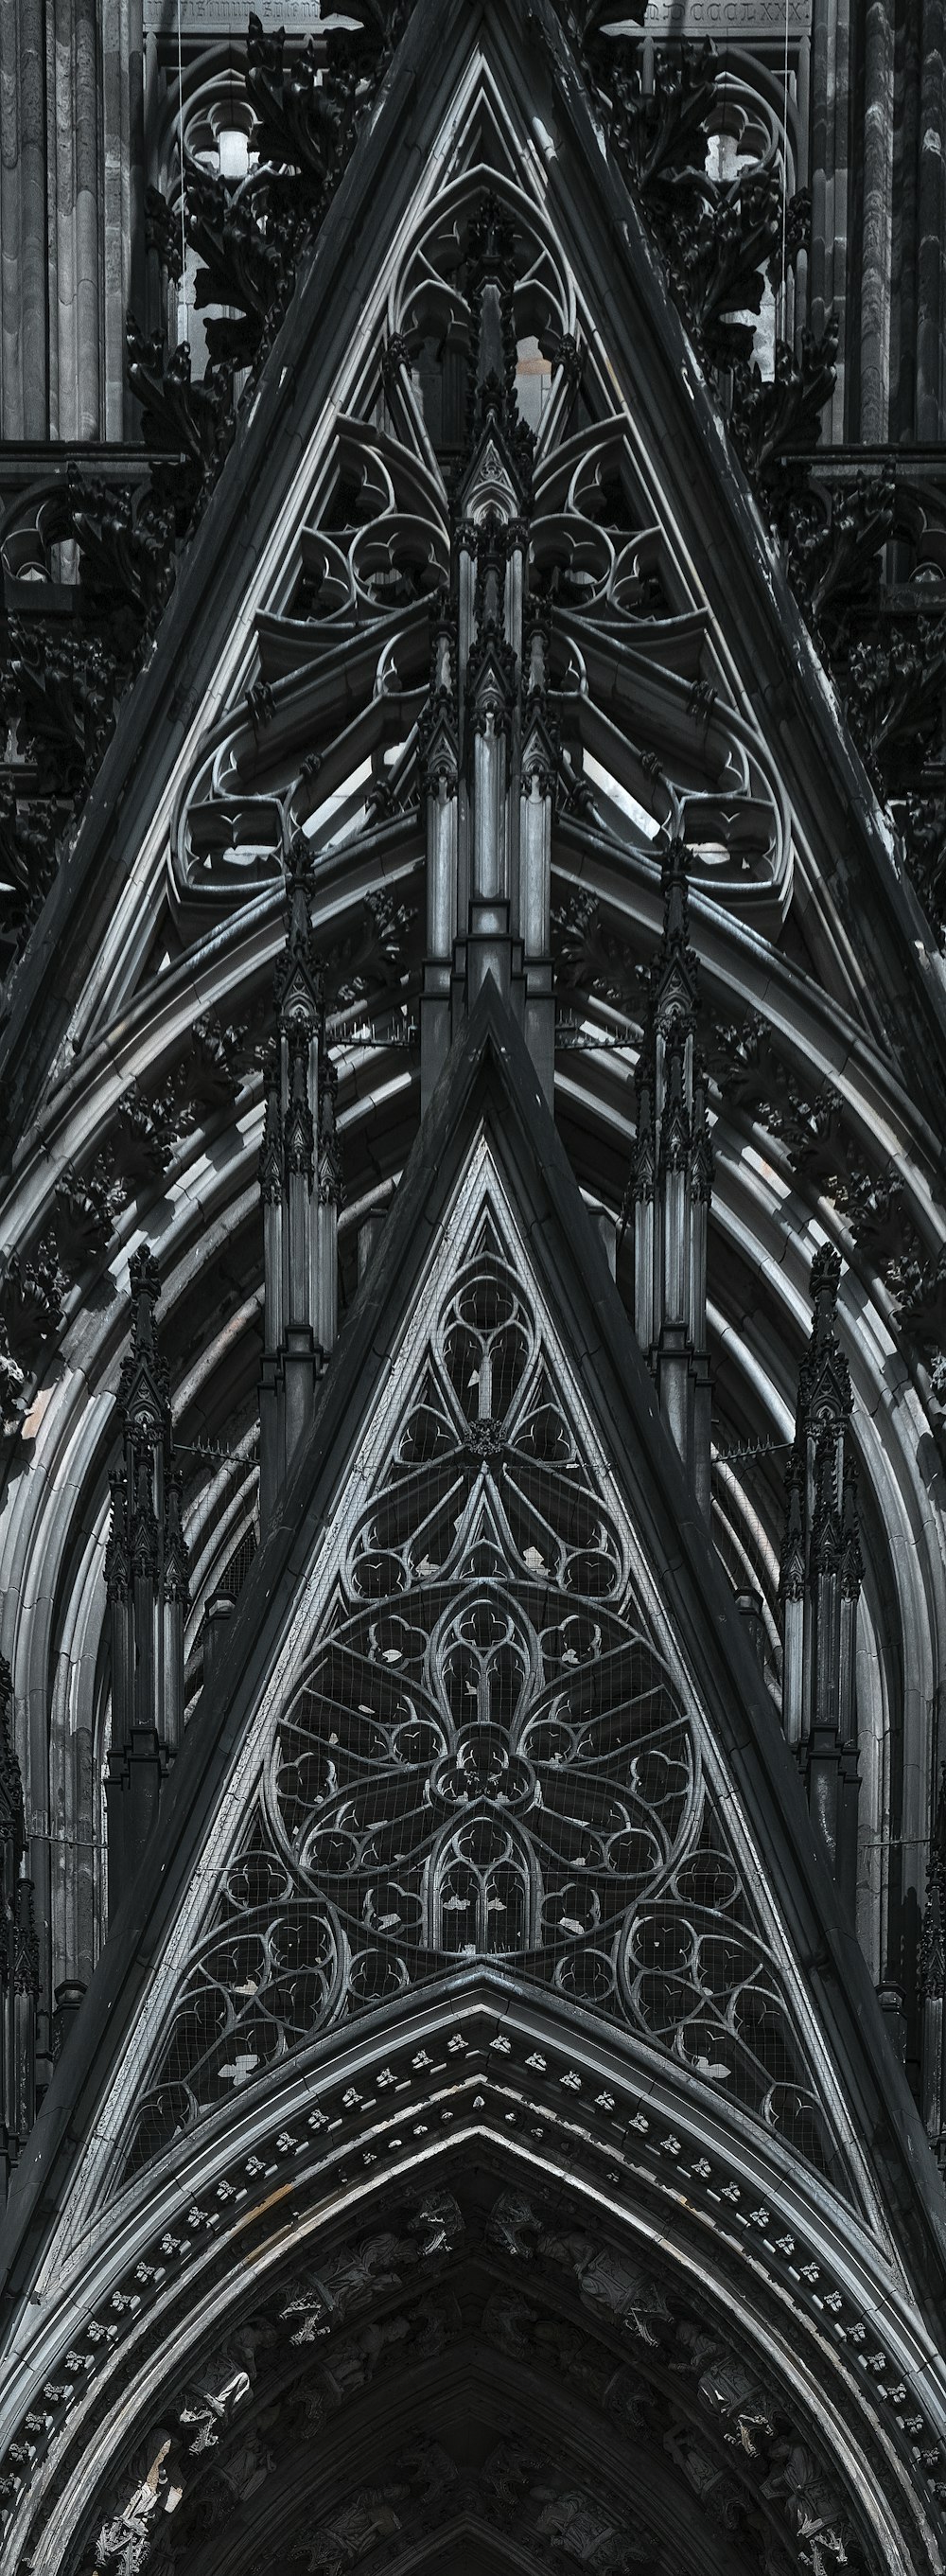 Una foto in bianco e nero di una cattedrale